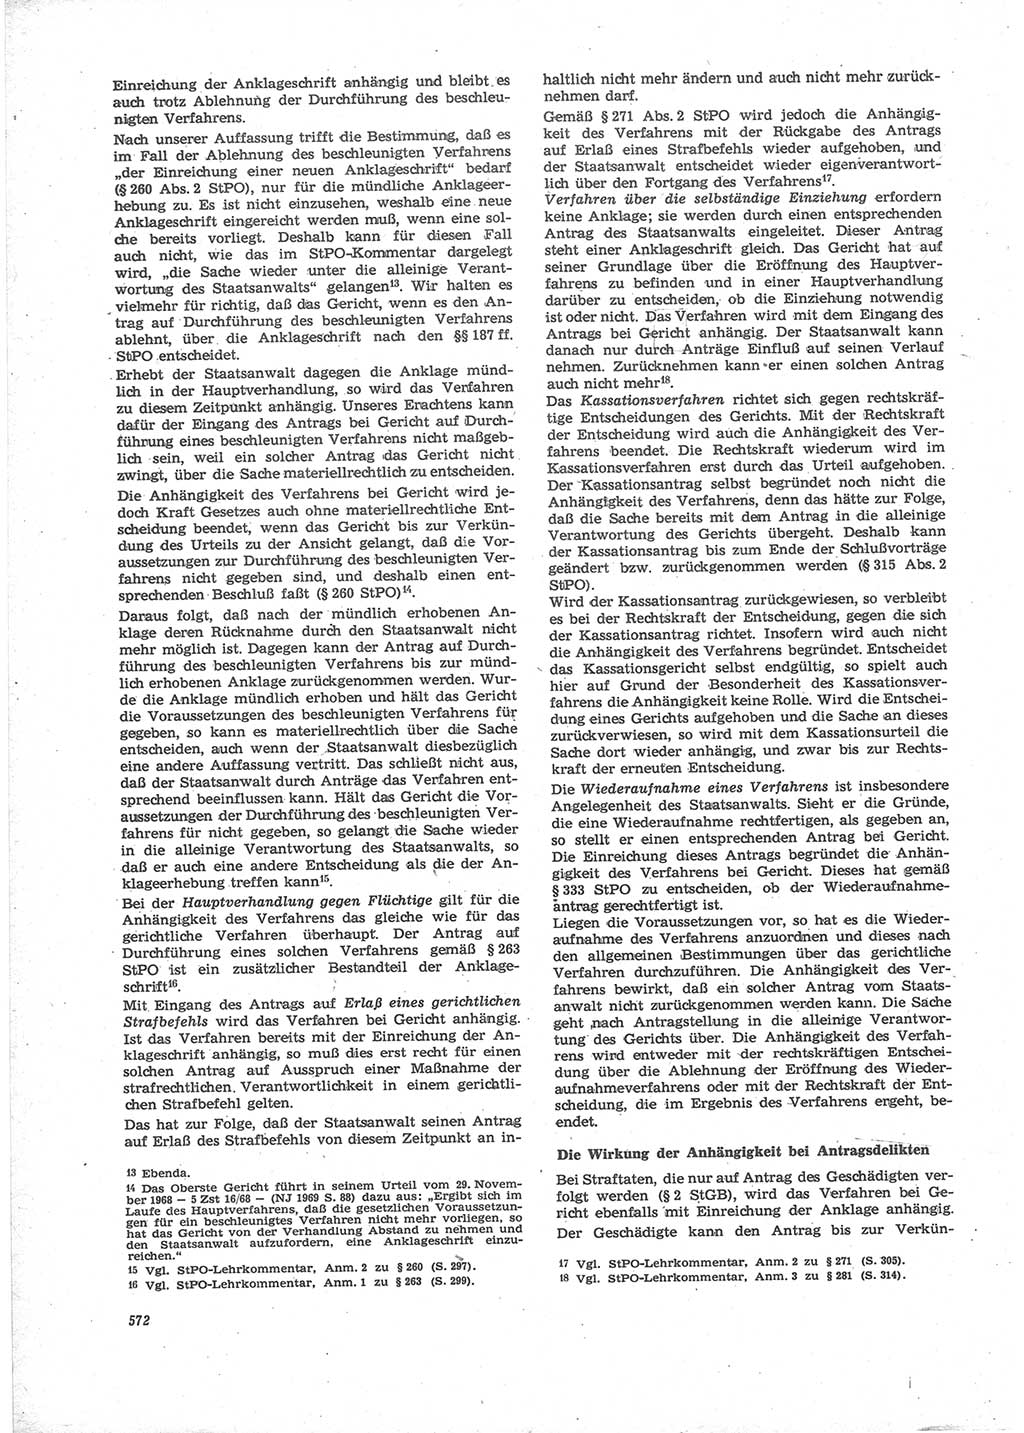 Neue Justiz (NJ), Zeitschrift für Recht und Rechtswissenschaft [Deutsche Demokratische Republik (DDR)], 24. Jahrgang 1970, Seite 572 (NJ DDR 1970, S. 572)